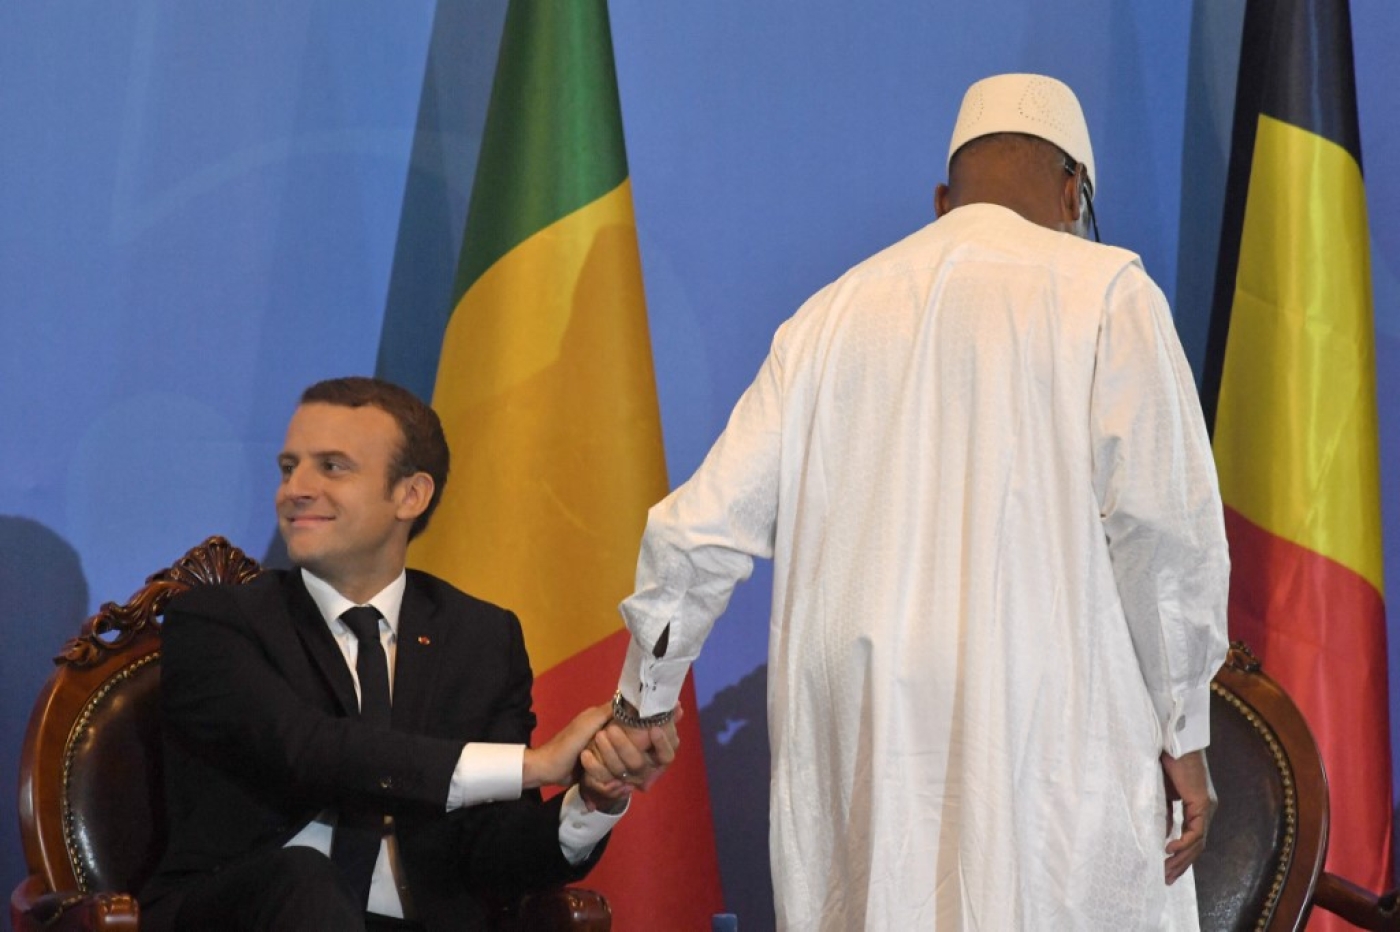 Emmanuel Macron au sommet G5 Sahel à Bamako, Mali, le 2 juillet 2017 (AFP/Christophe Archambault)